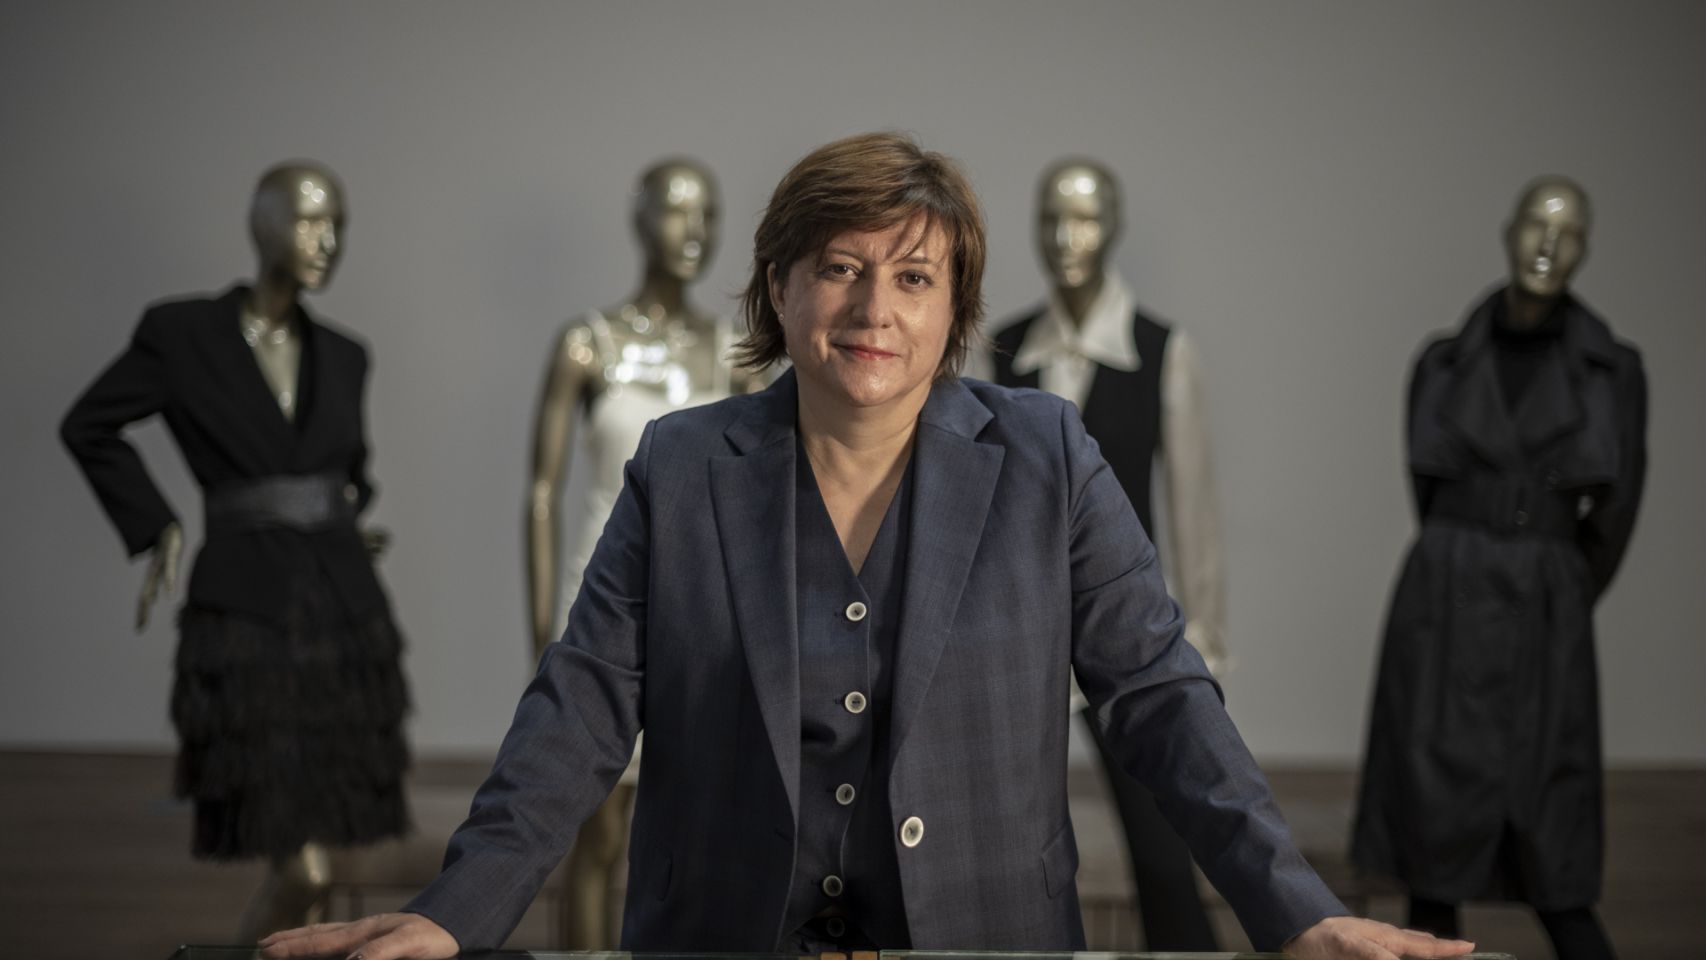 Dora Casal, directora ejecutiva de Roberto Verino